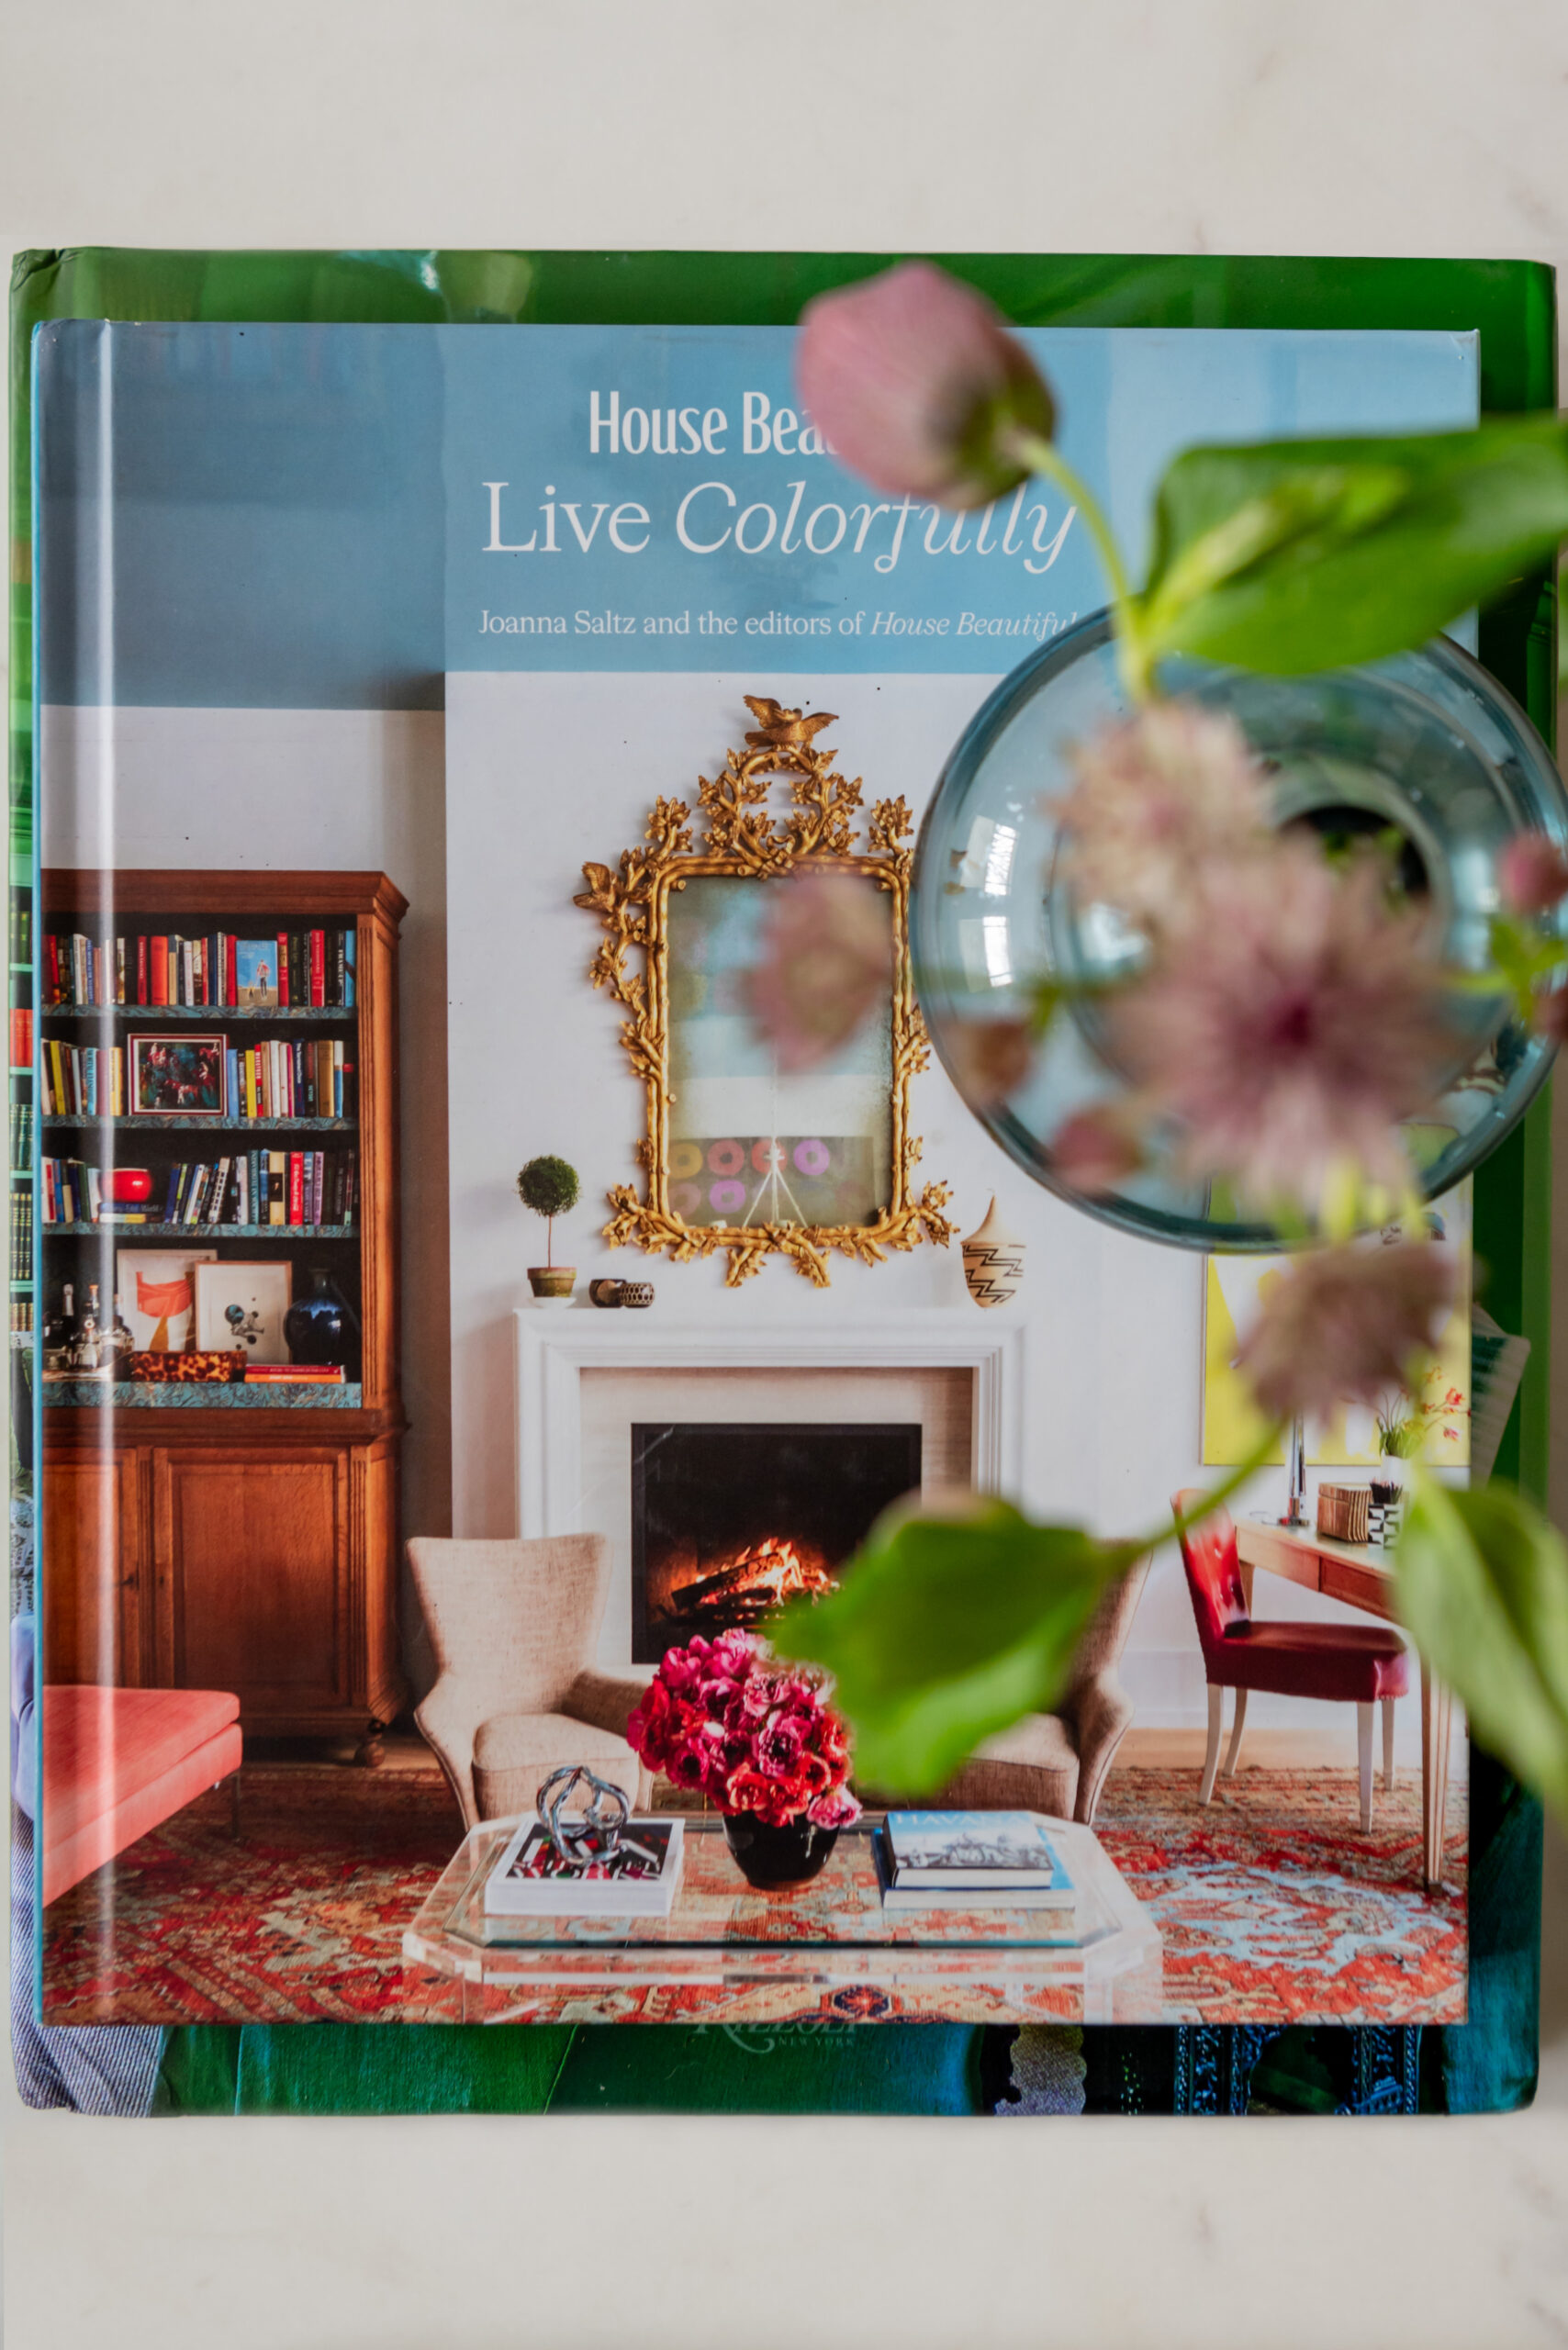 Colorful interior design book